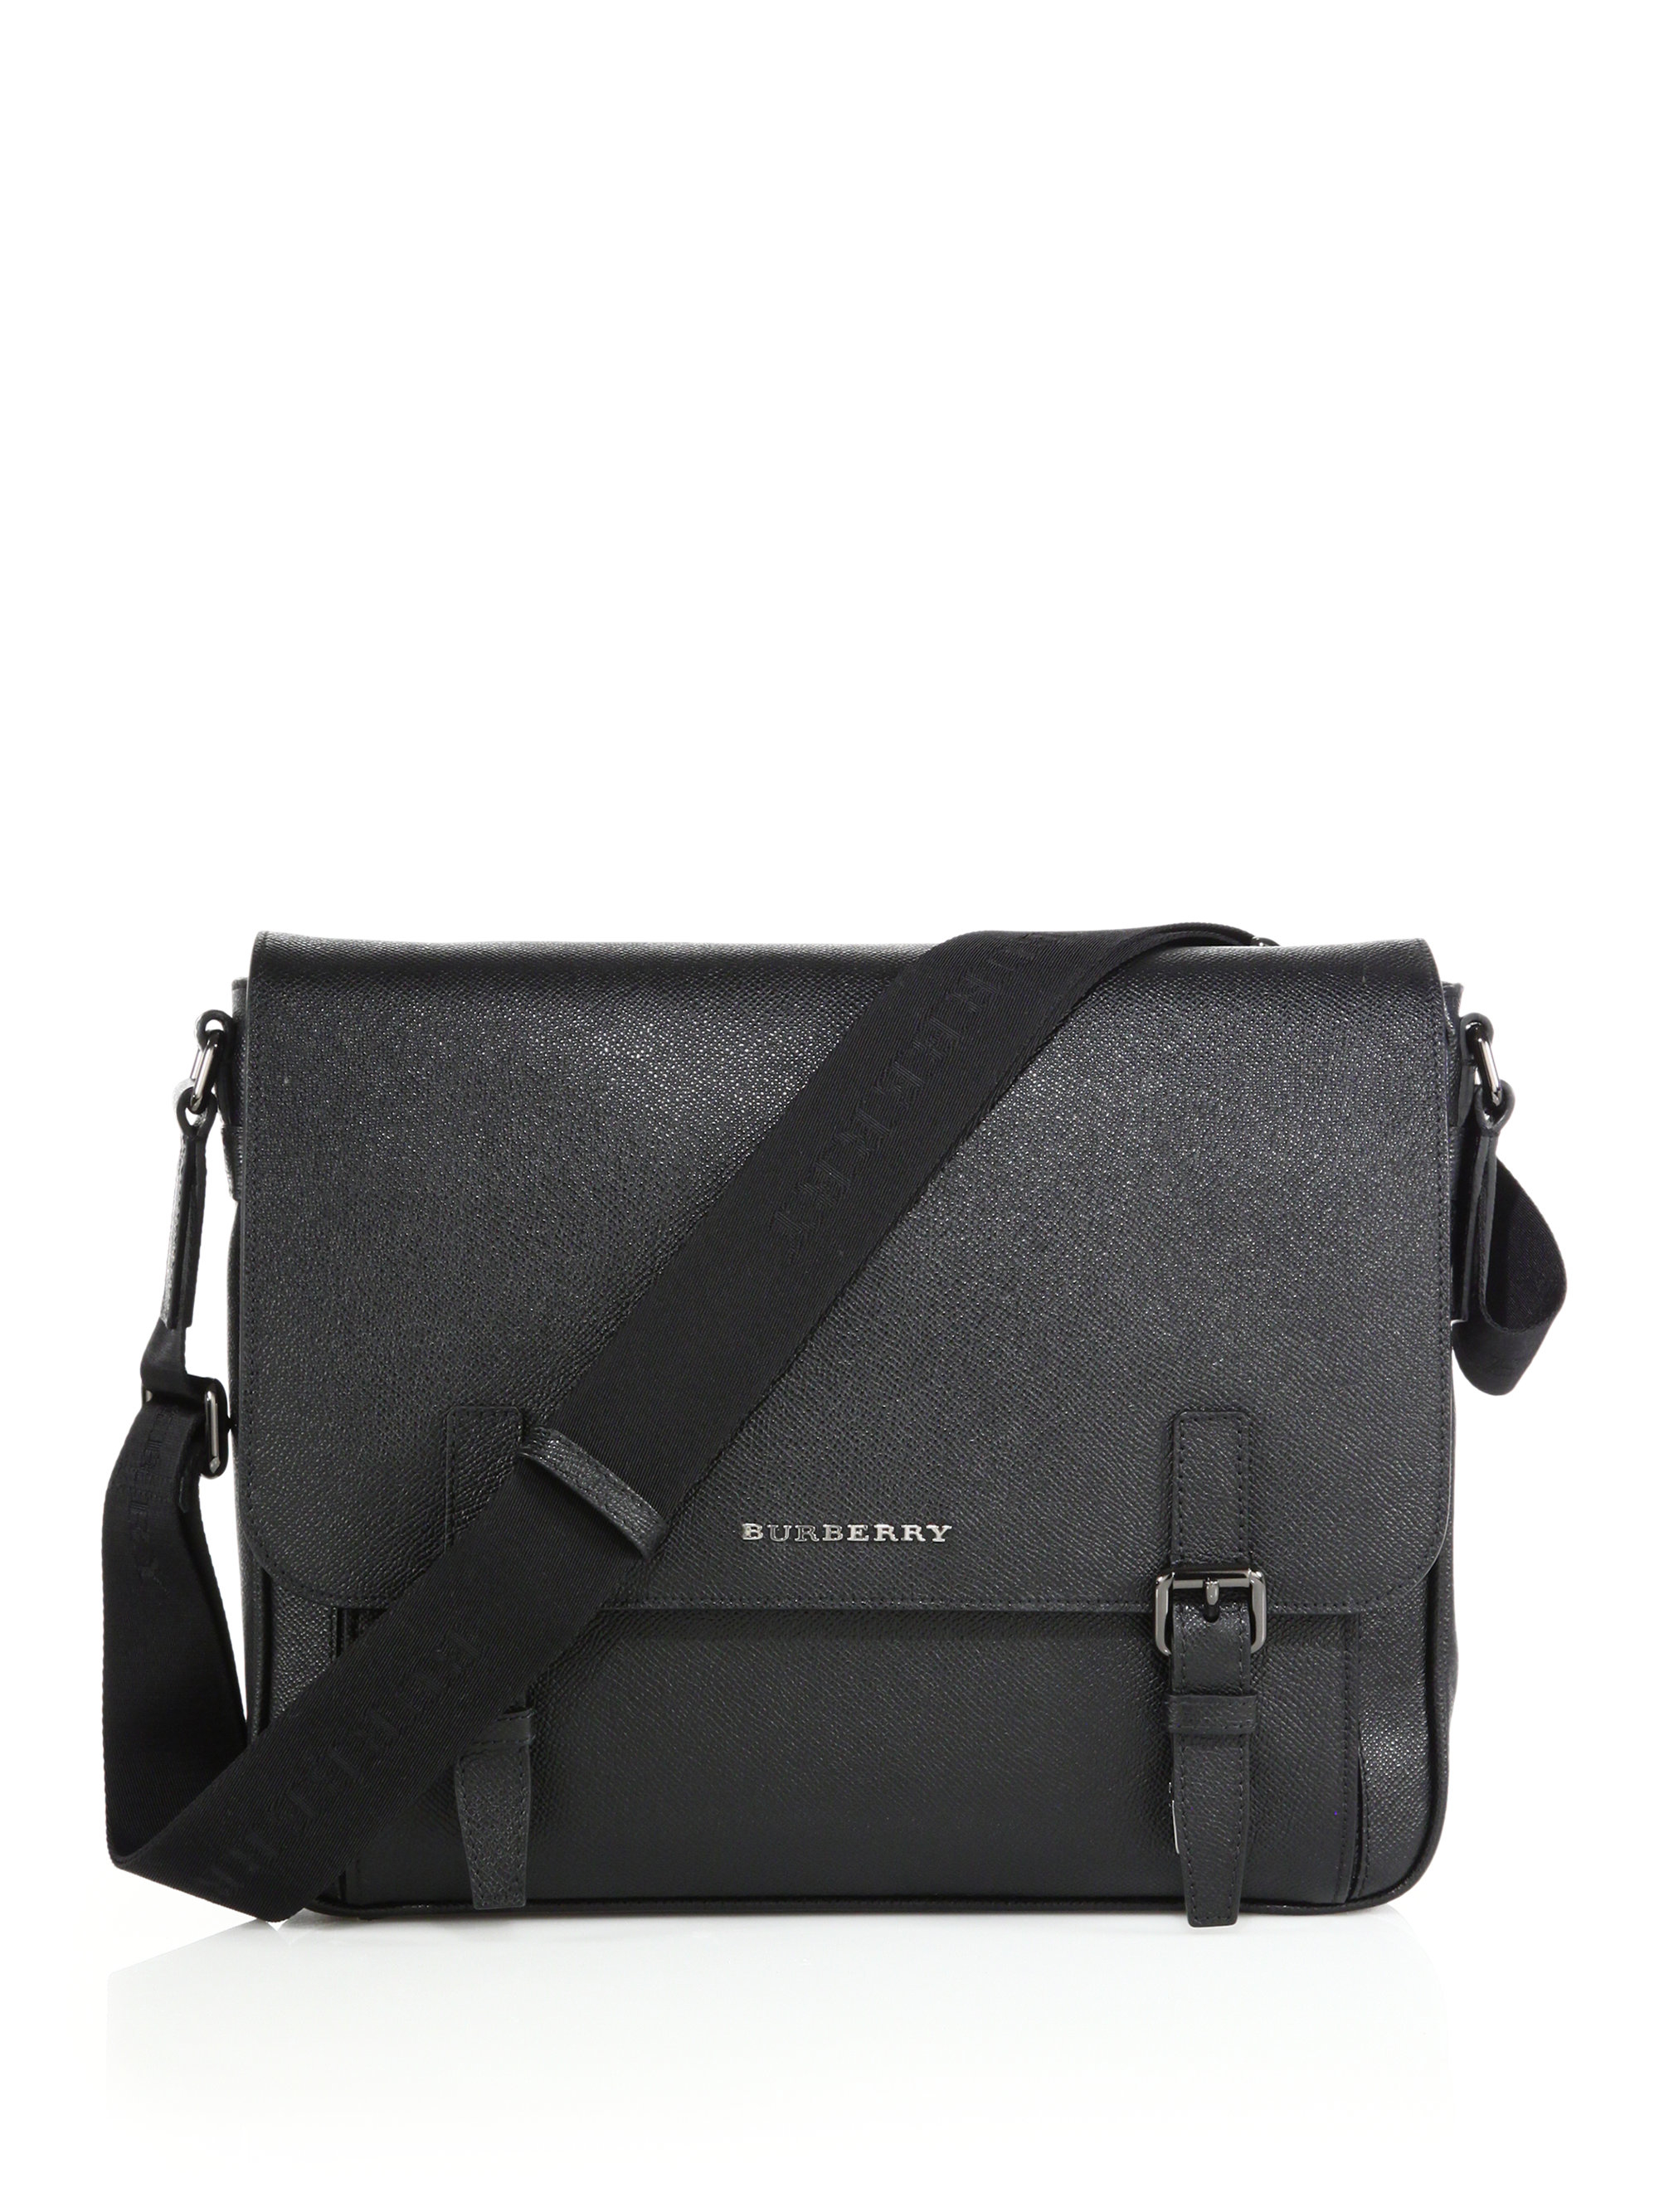 Burberry Ellison Leather Messenger Bag in Black for Men - Save 85% | Lyst